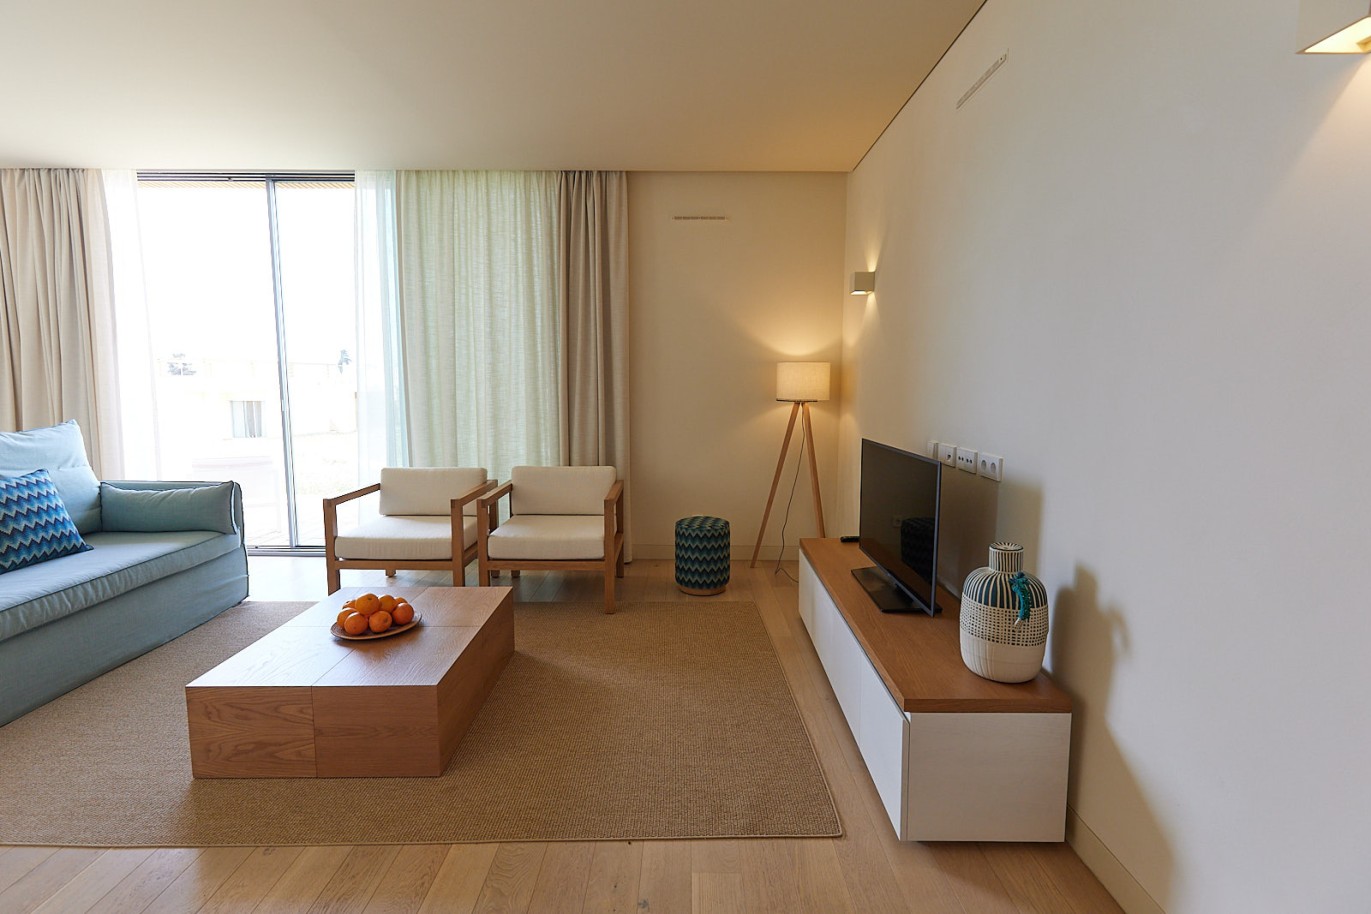 3 bedroom flat in resort, for sale in Porches, Algarve_230739